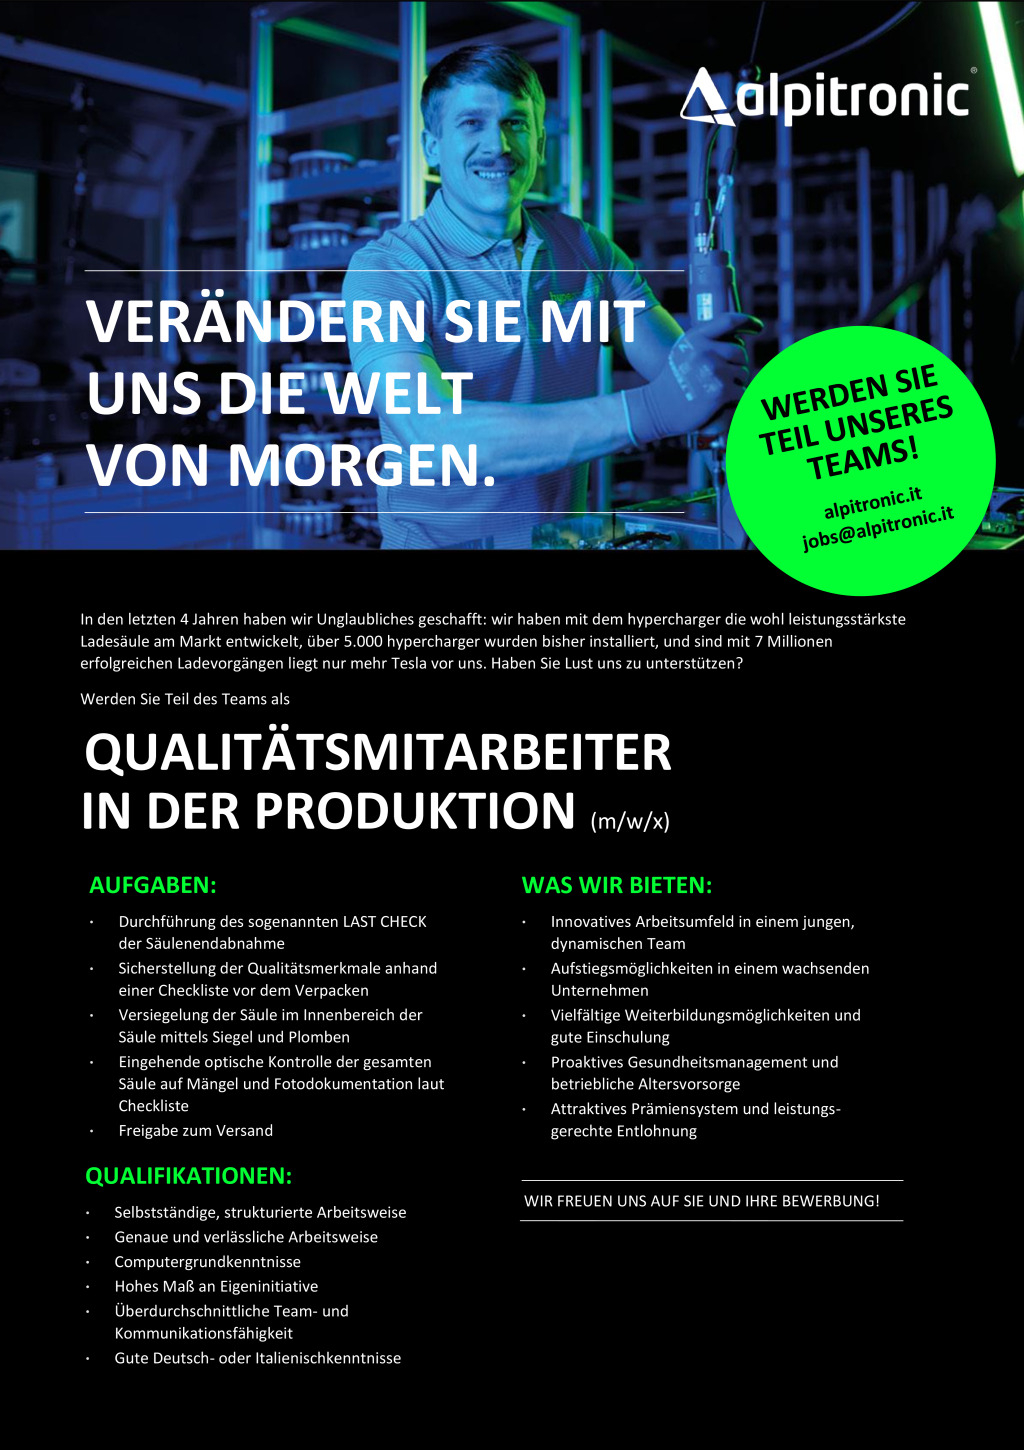 Qualitätsmitarbeiter in der Produktion (m/w/x)